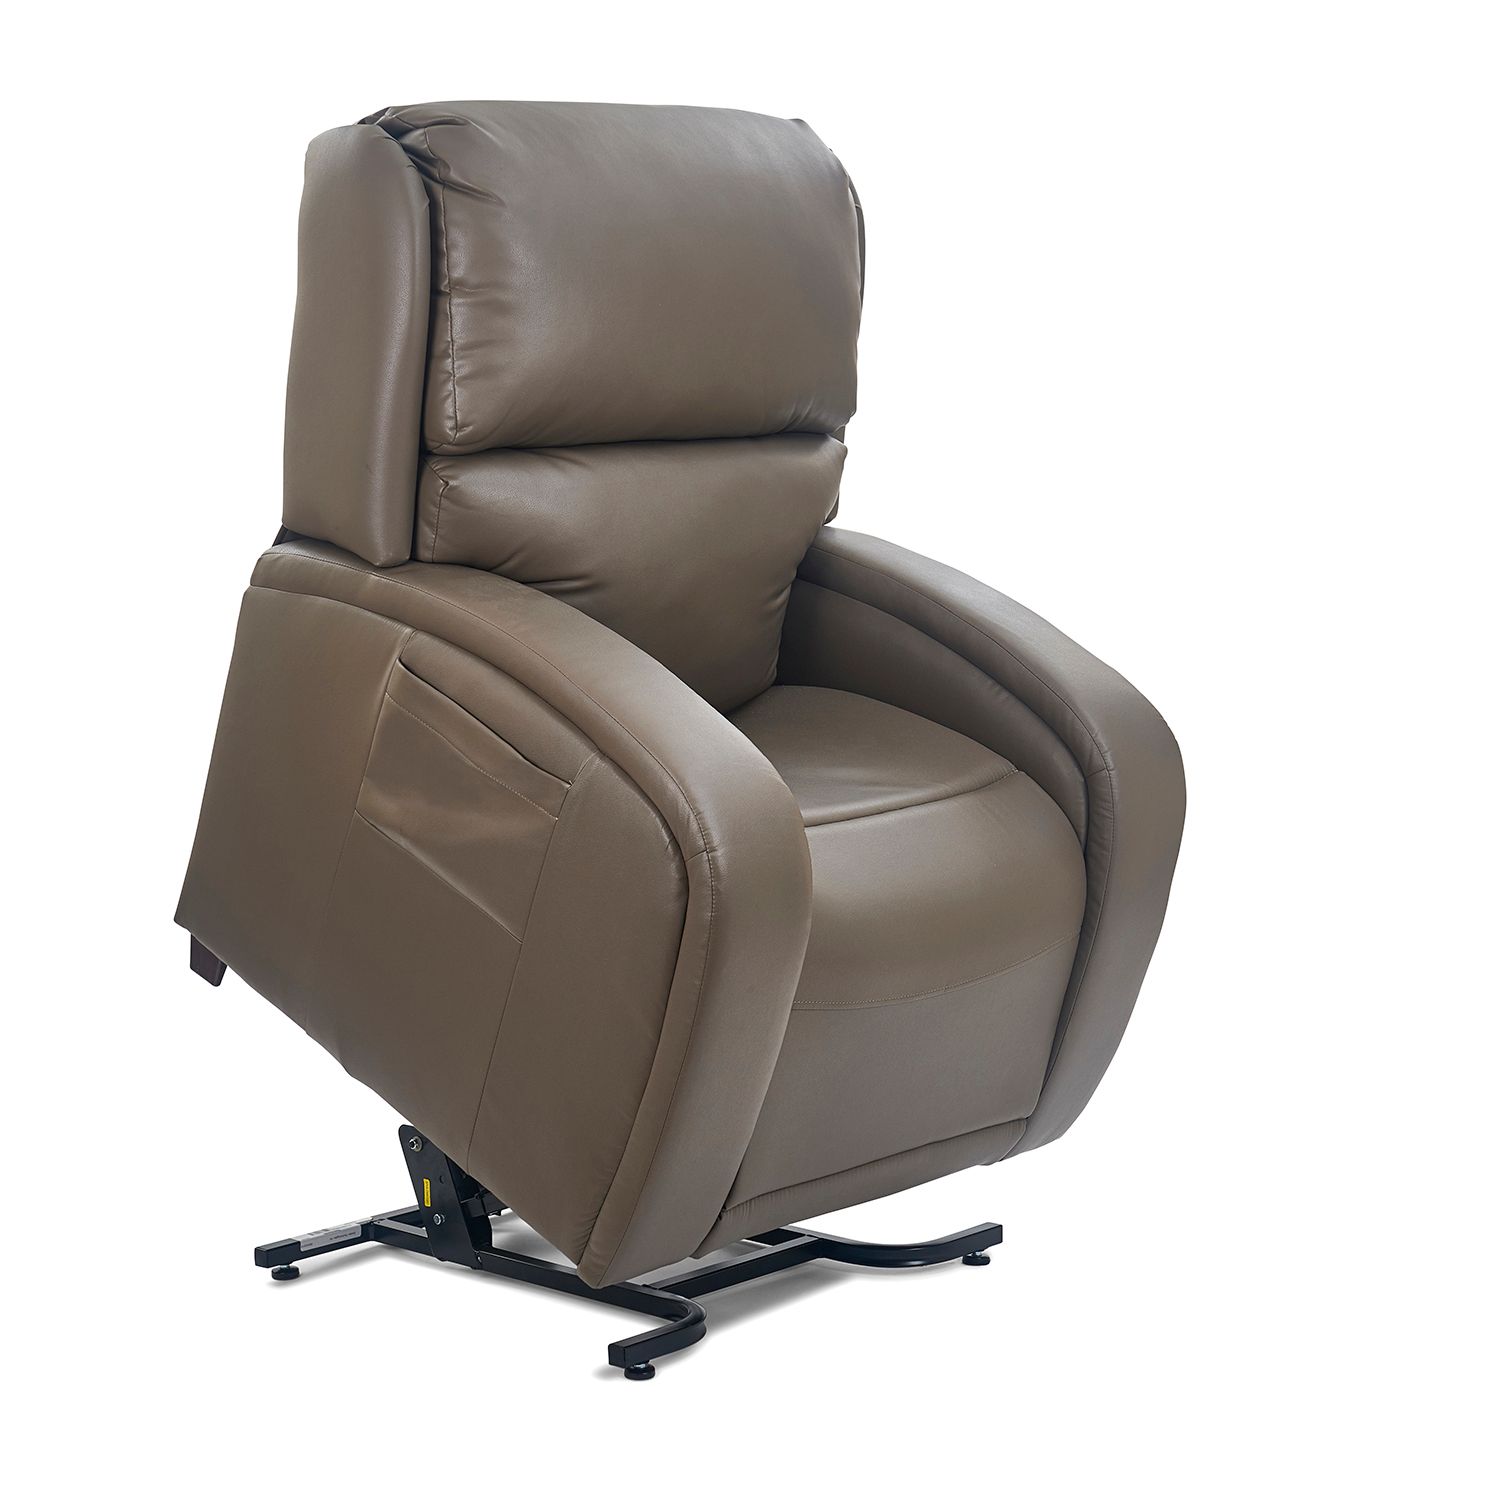 Oceanside Golden Tech lift chair recliner twilight ezsleeper cloud viva relaxer maxi-comfort